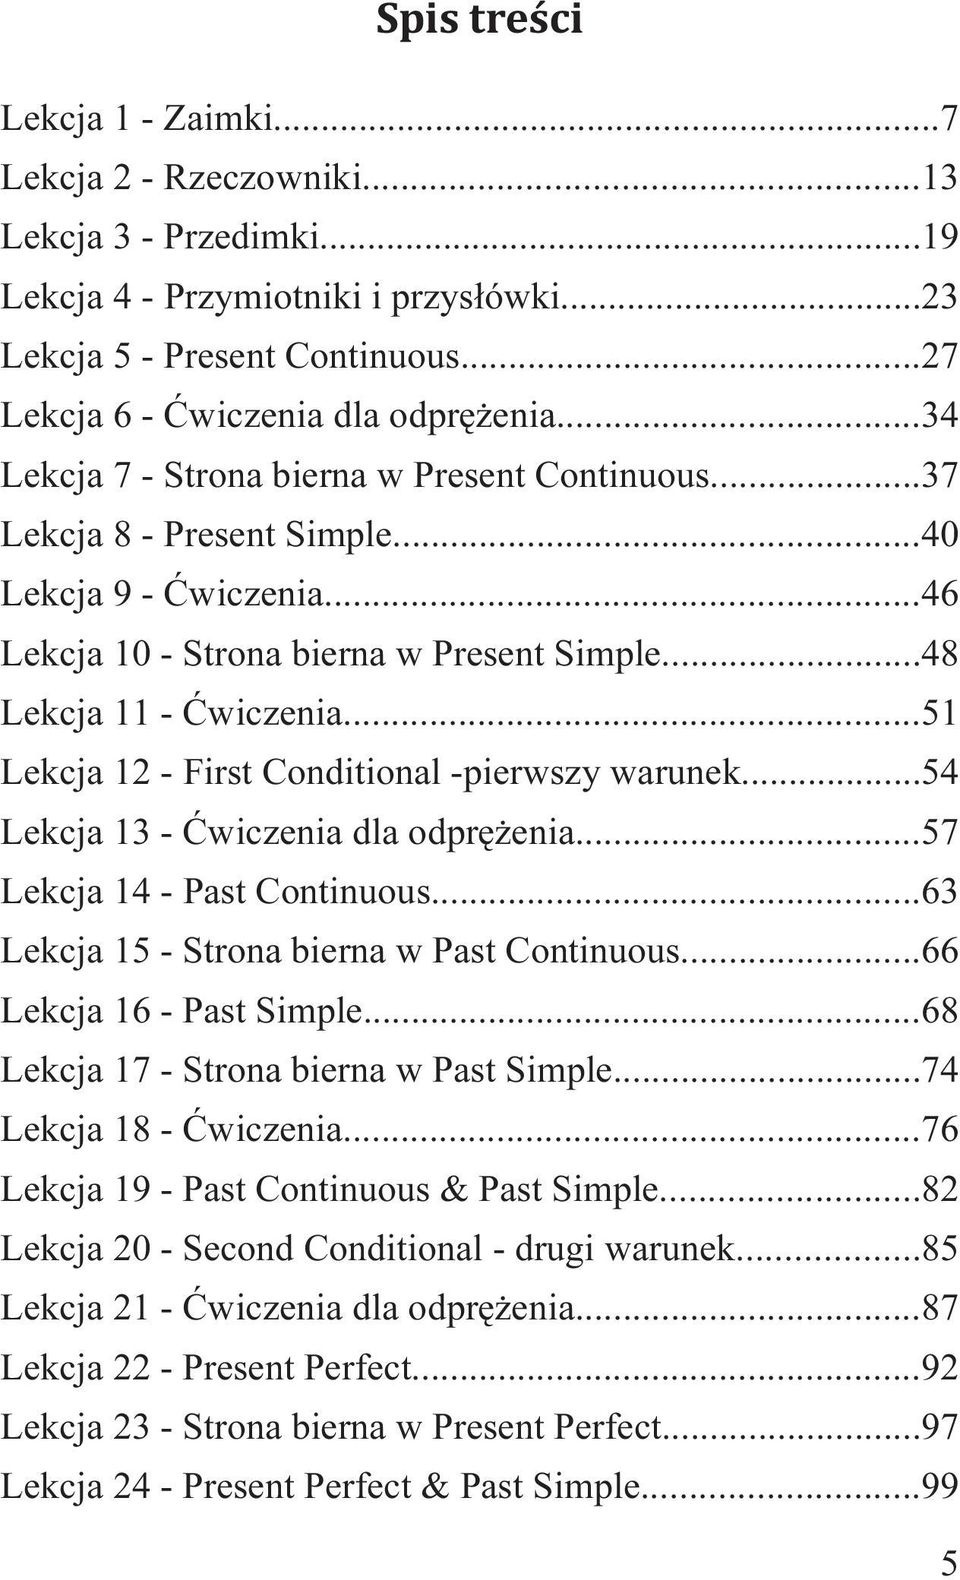 ..51 Lekcja 12 - First Conditional -pierwszy warunek...54 Lekcja 13 - Ćwiczenia dla odprężenia...57 Lekcja 14 - Past Continuous...63 Lekcja 15 - Strona bierna w Past Continuous.